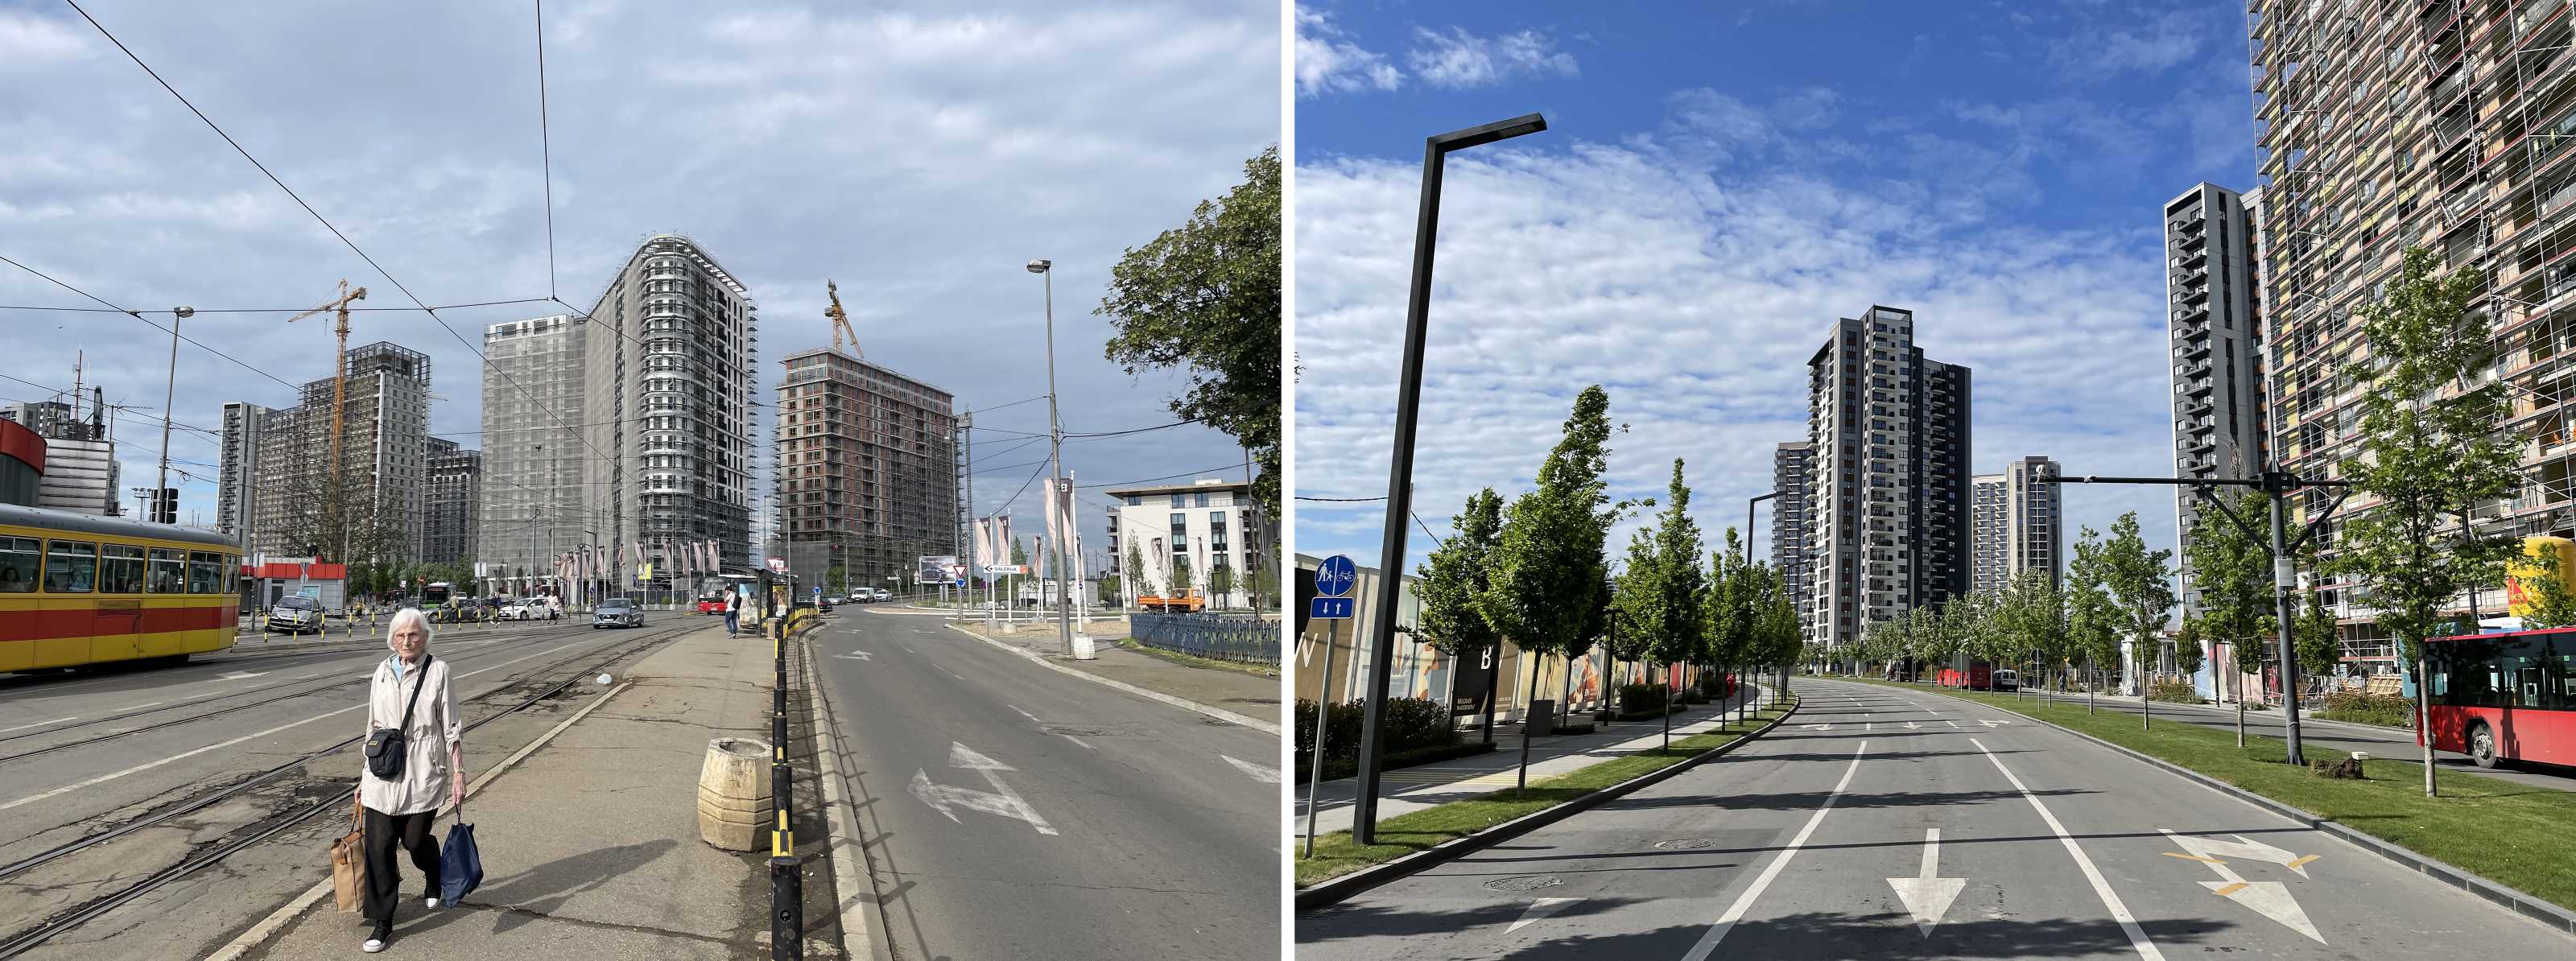 Abb. 5 BW in der Umsetzung. Links: Blick von der Innenstadt aus. Rechts: Hauptstraße des neuen Viertels (Quelle: Aufnahmen d. A., Mai 2022)